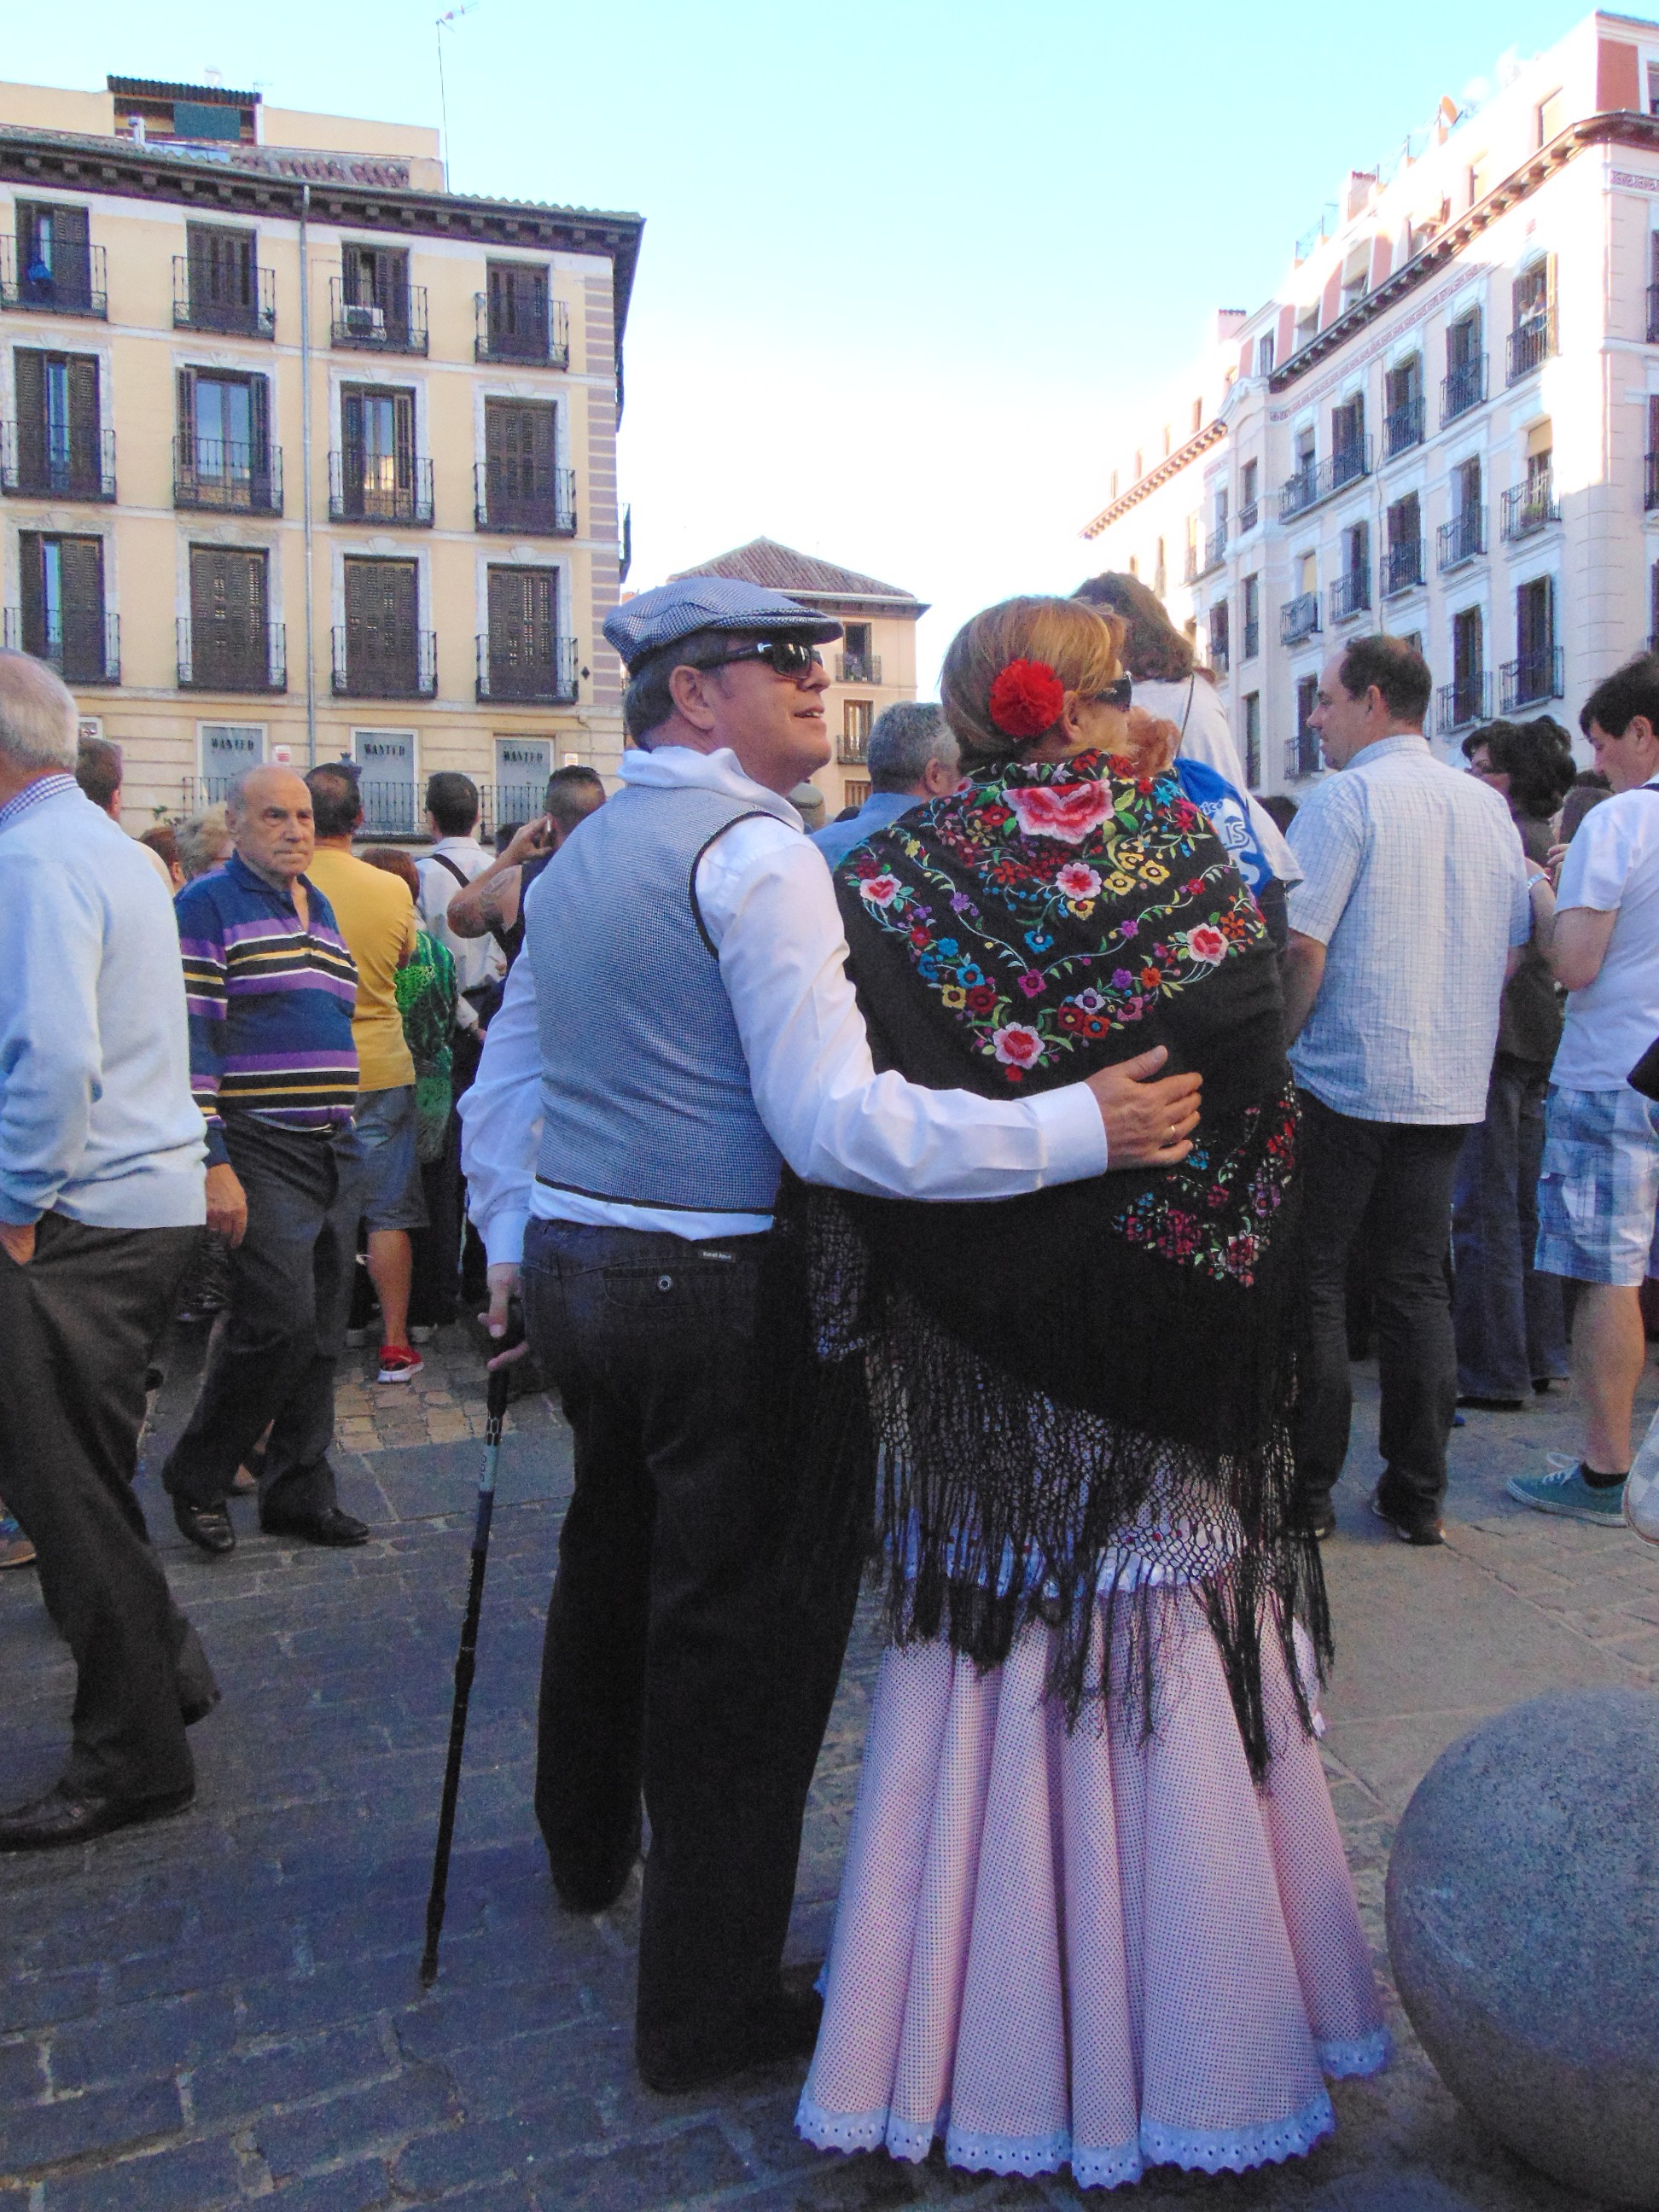 costumes espanhois 6